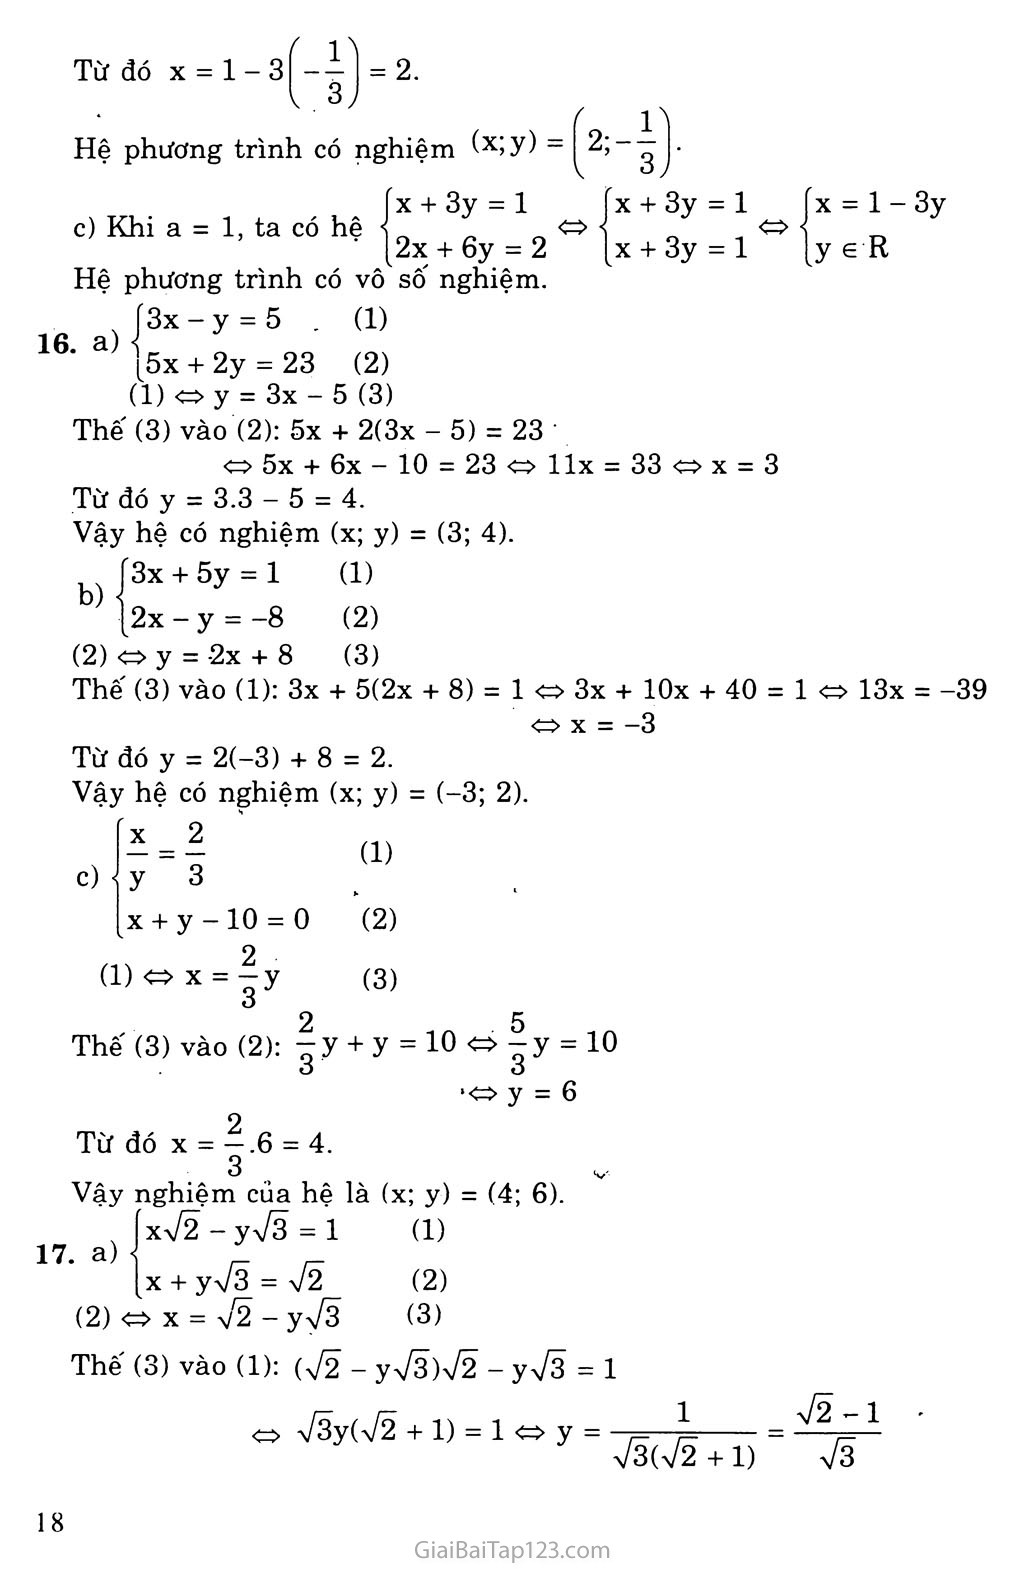 Bài 3. Giải hệ phương trình bằng phương pháp thay thế trang 5